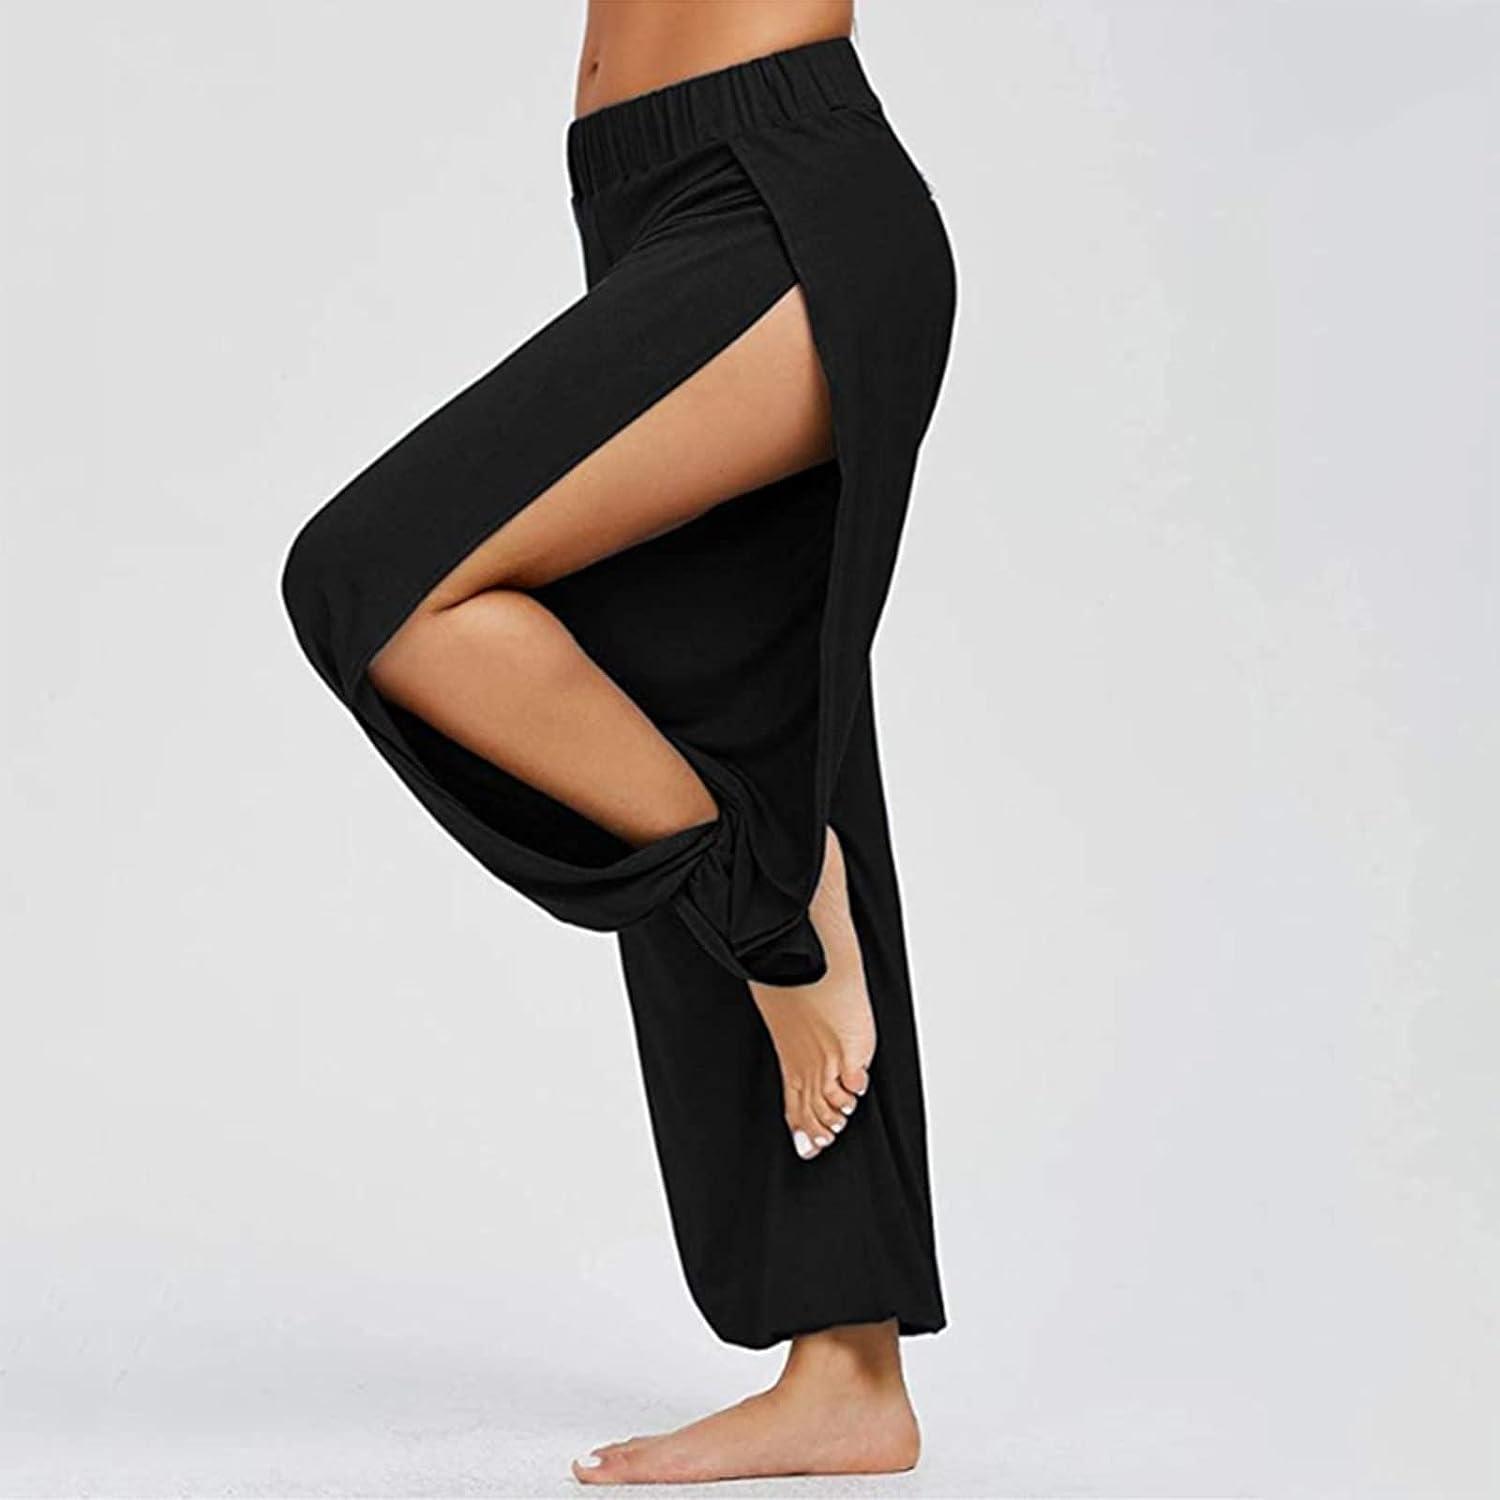  Boot Cut Yoga Pants Women Gym Work Harem Sweatpants